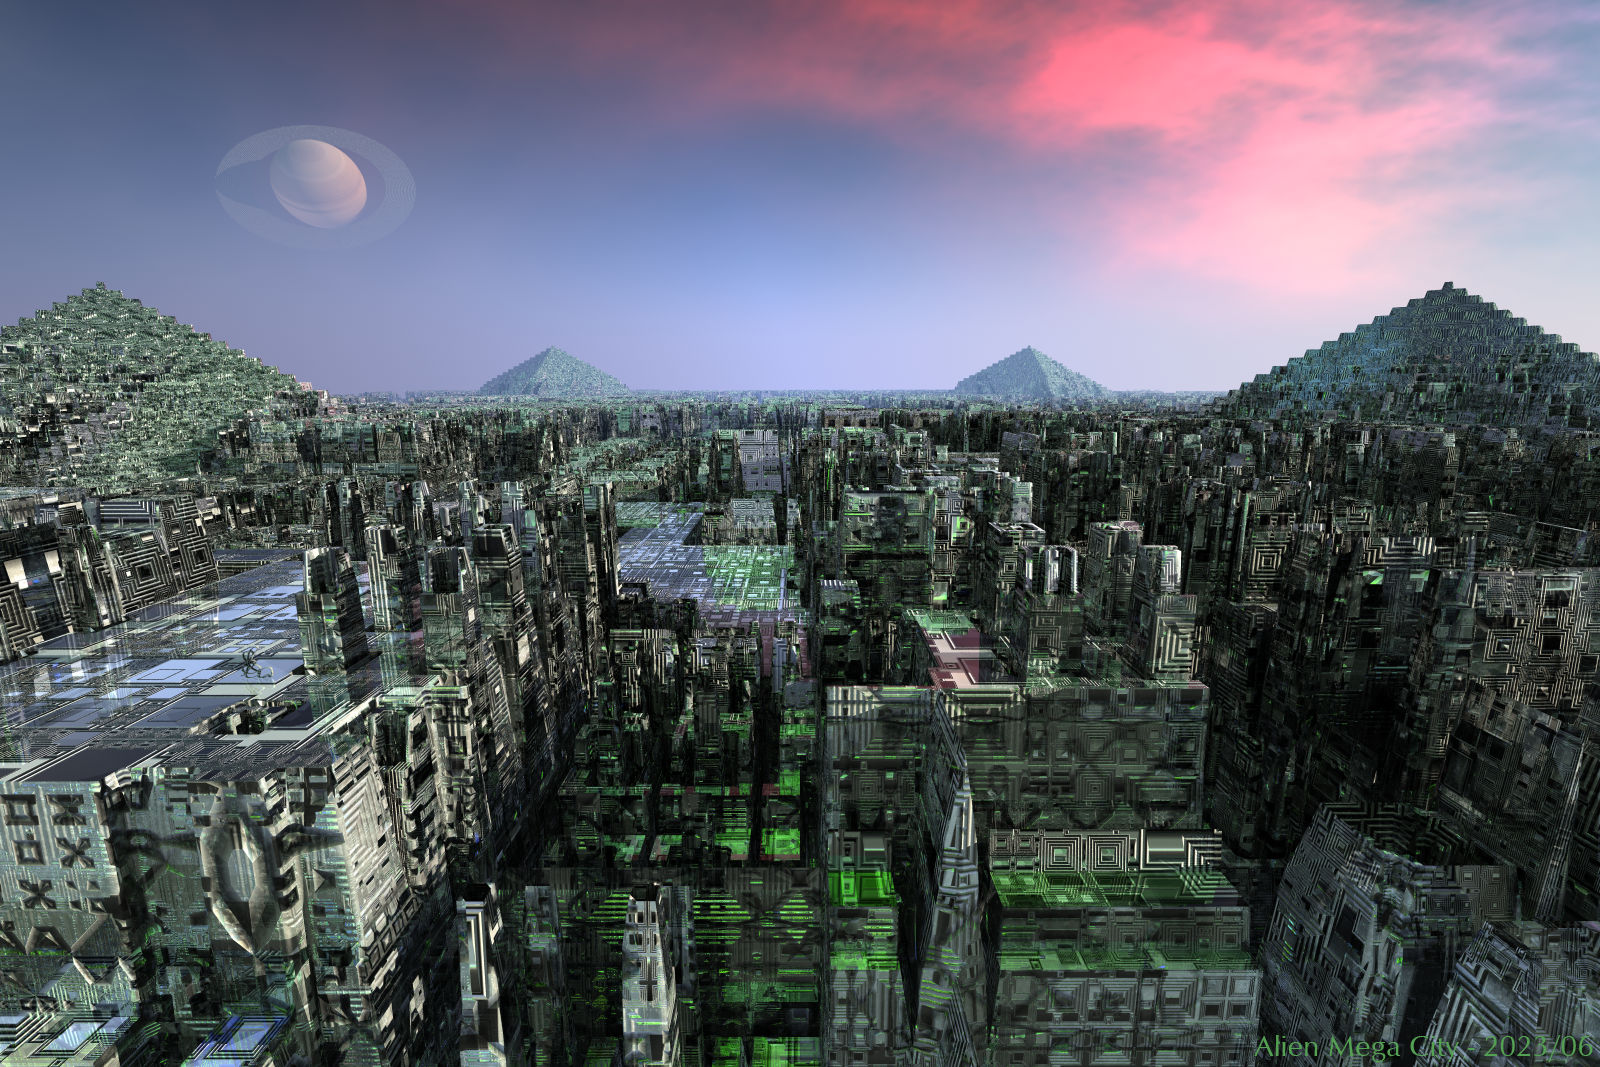 Alien Mega City